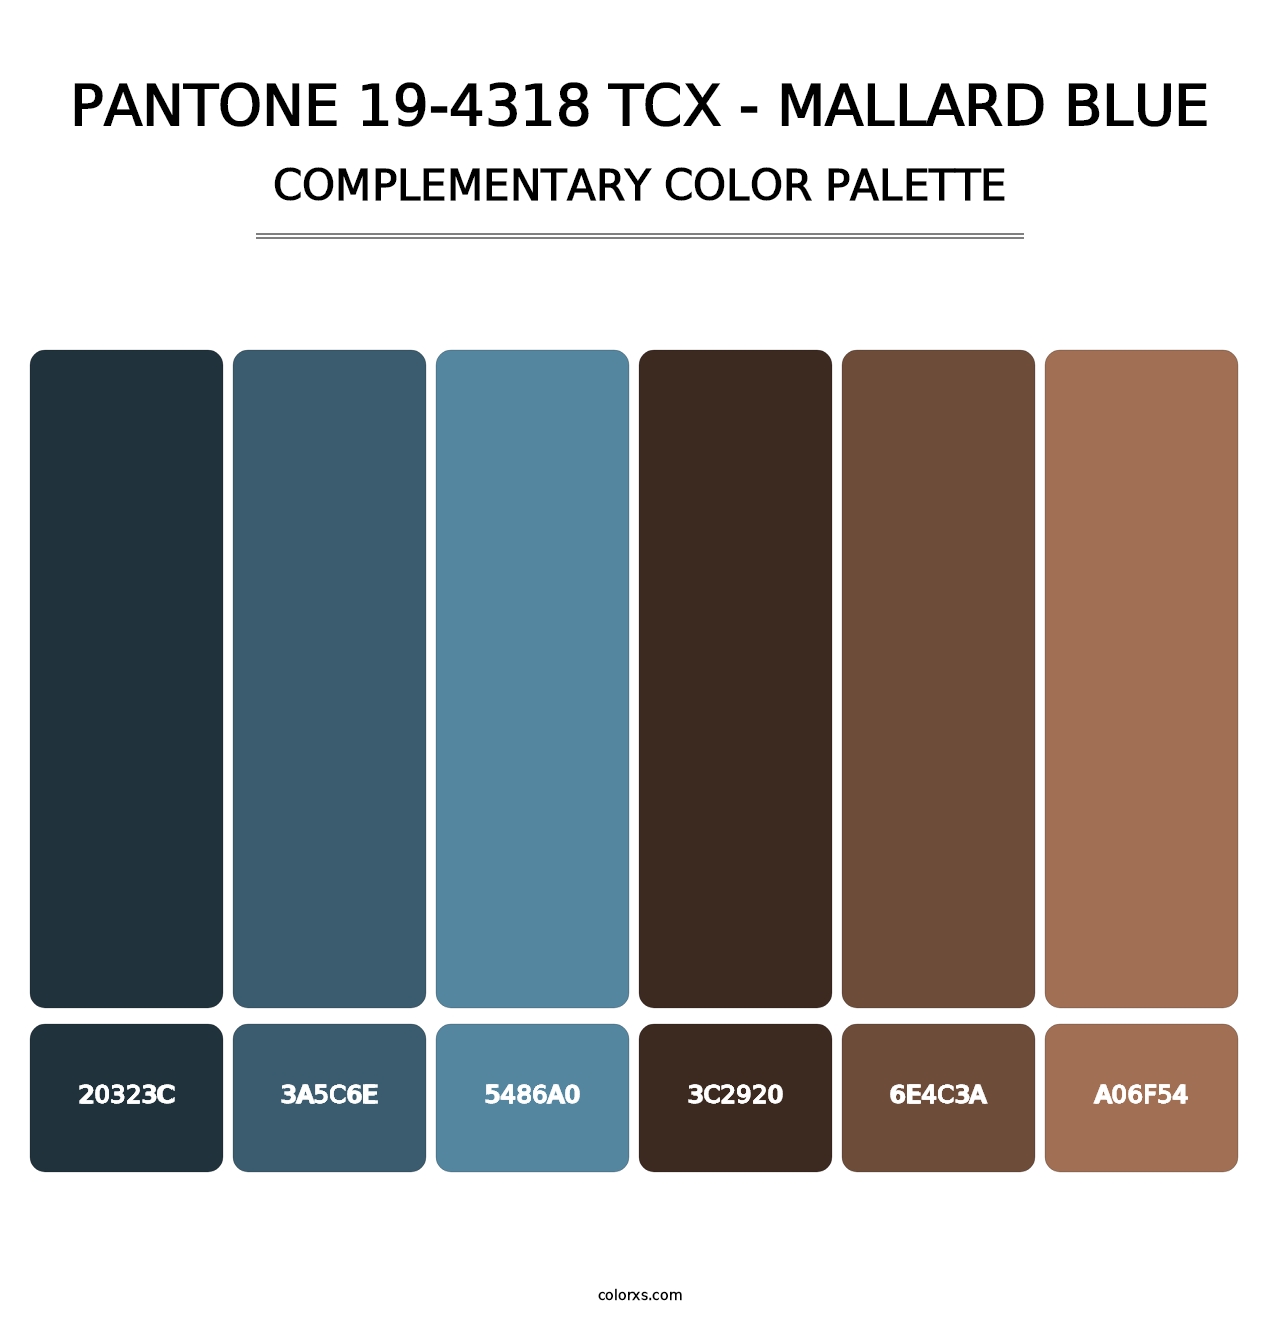 PANTONE 19-4318 TCX - Mallard Blue - Complementary Color Palette